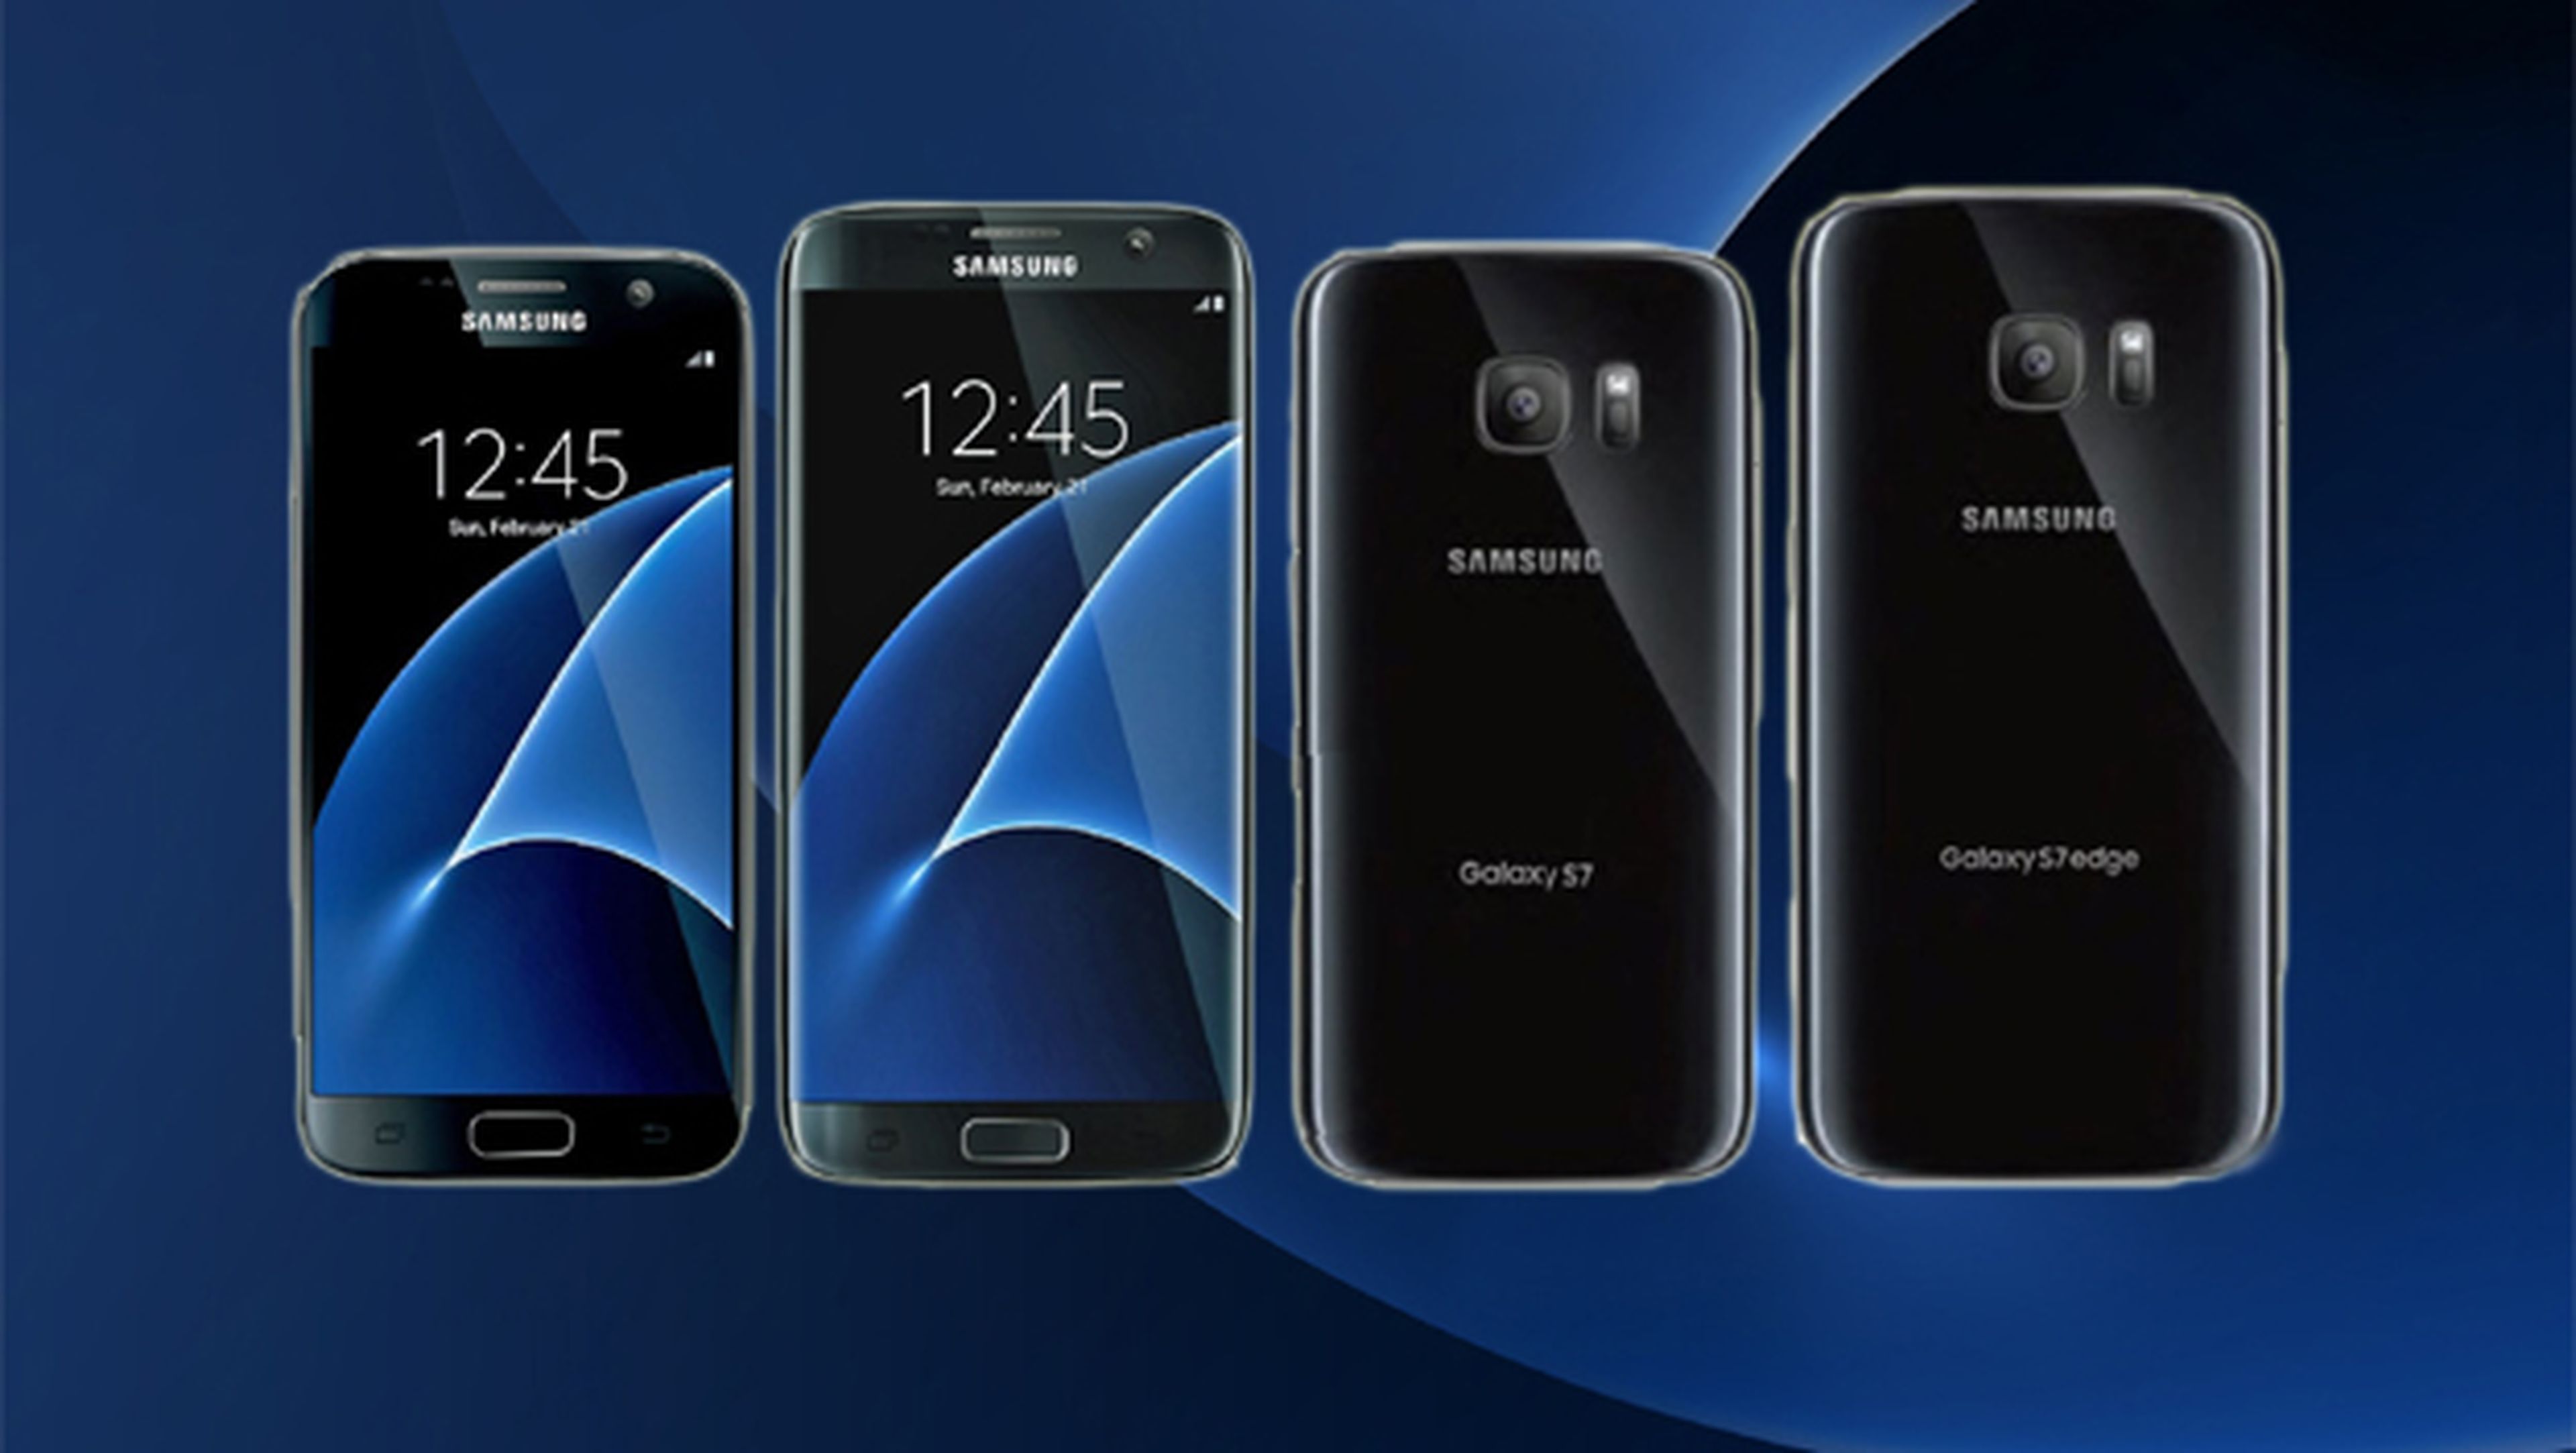 Samsung Galaxy S7, ¿qué más queda por conocer? | Computer Hoy